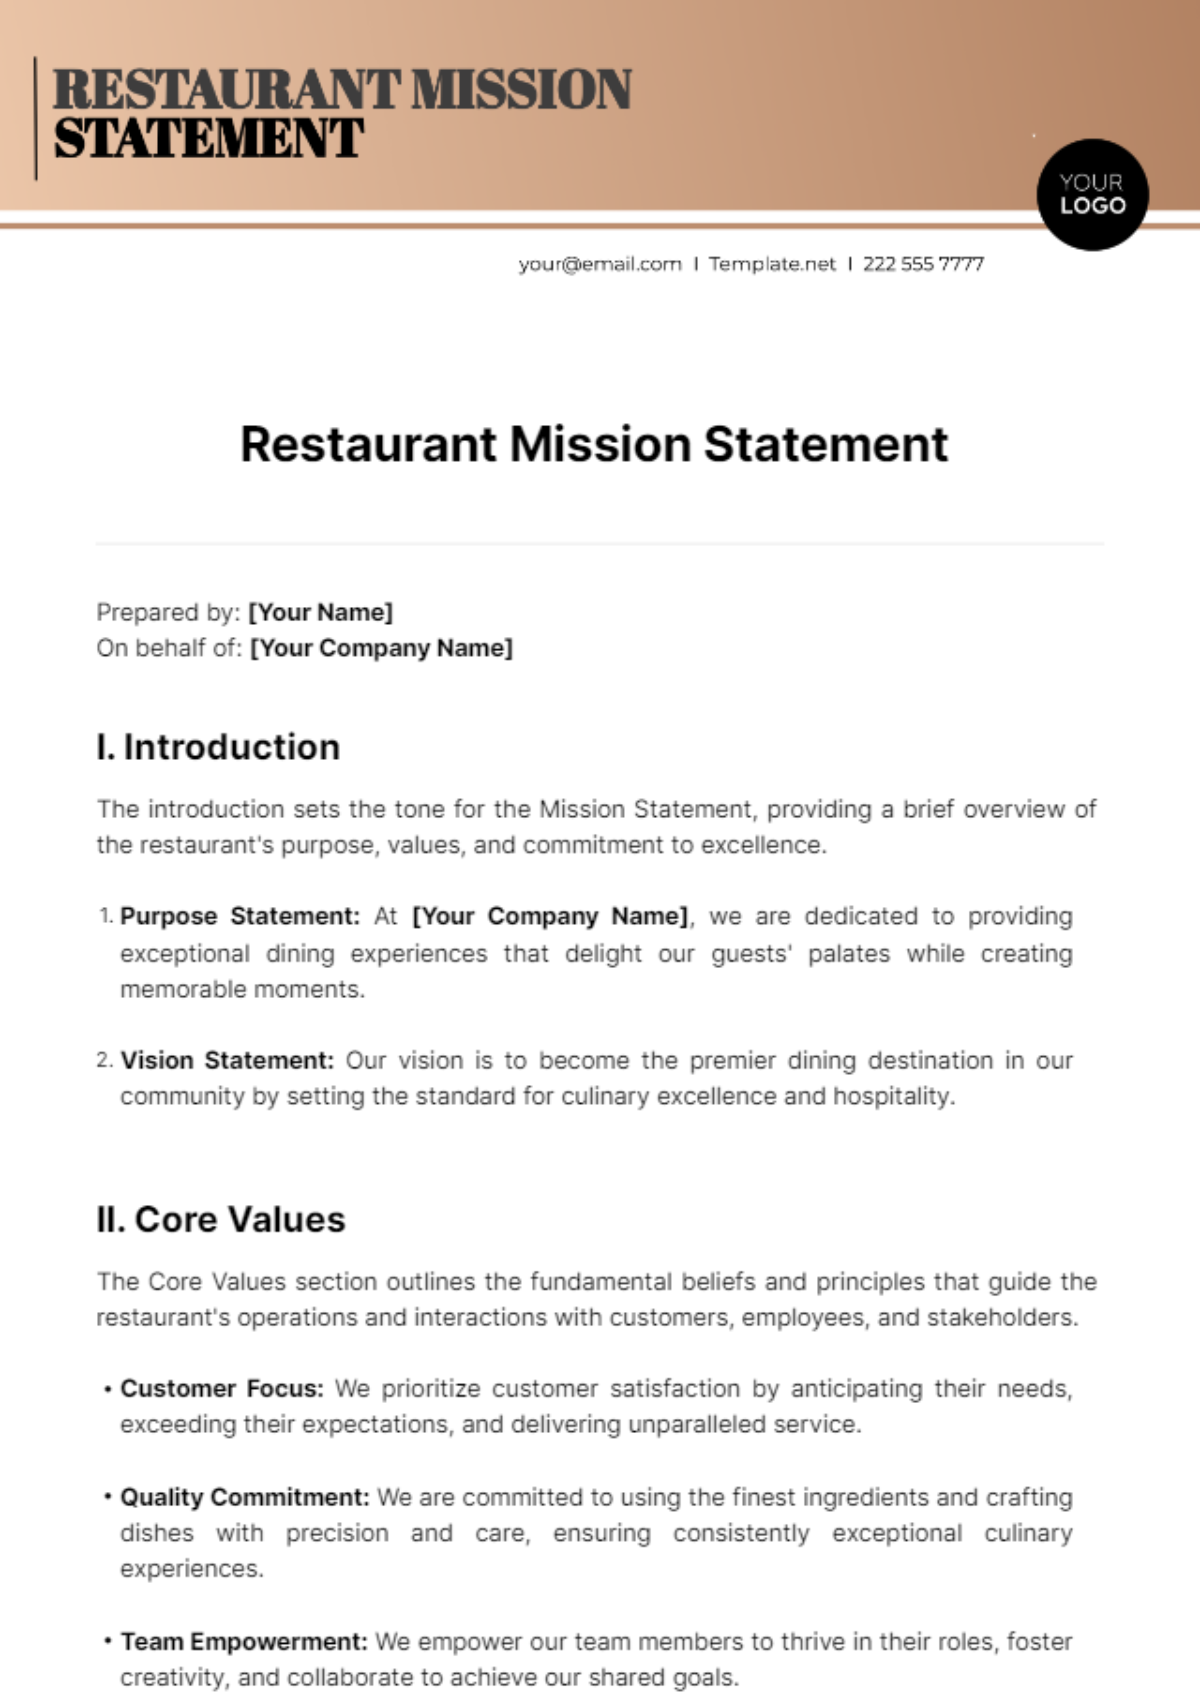 Restaurant Mission Statement Template